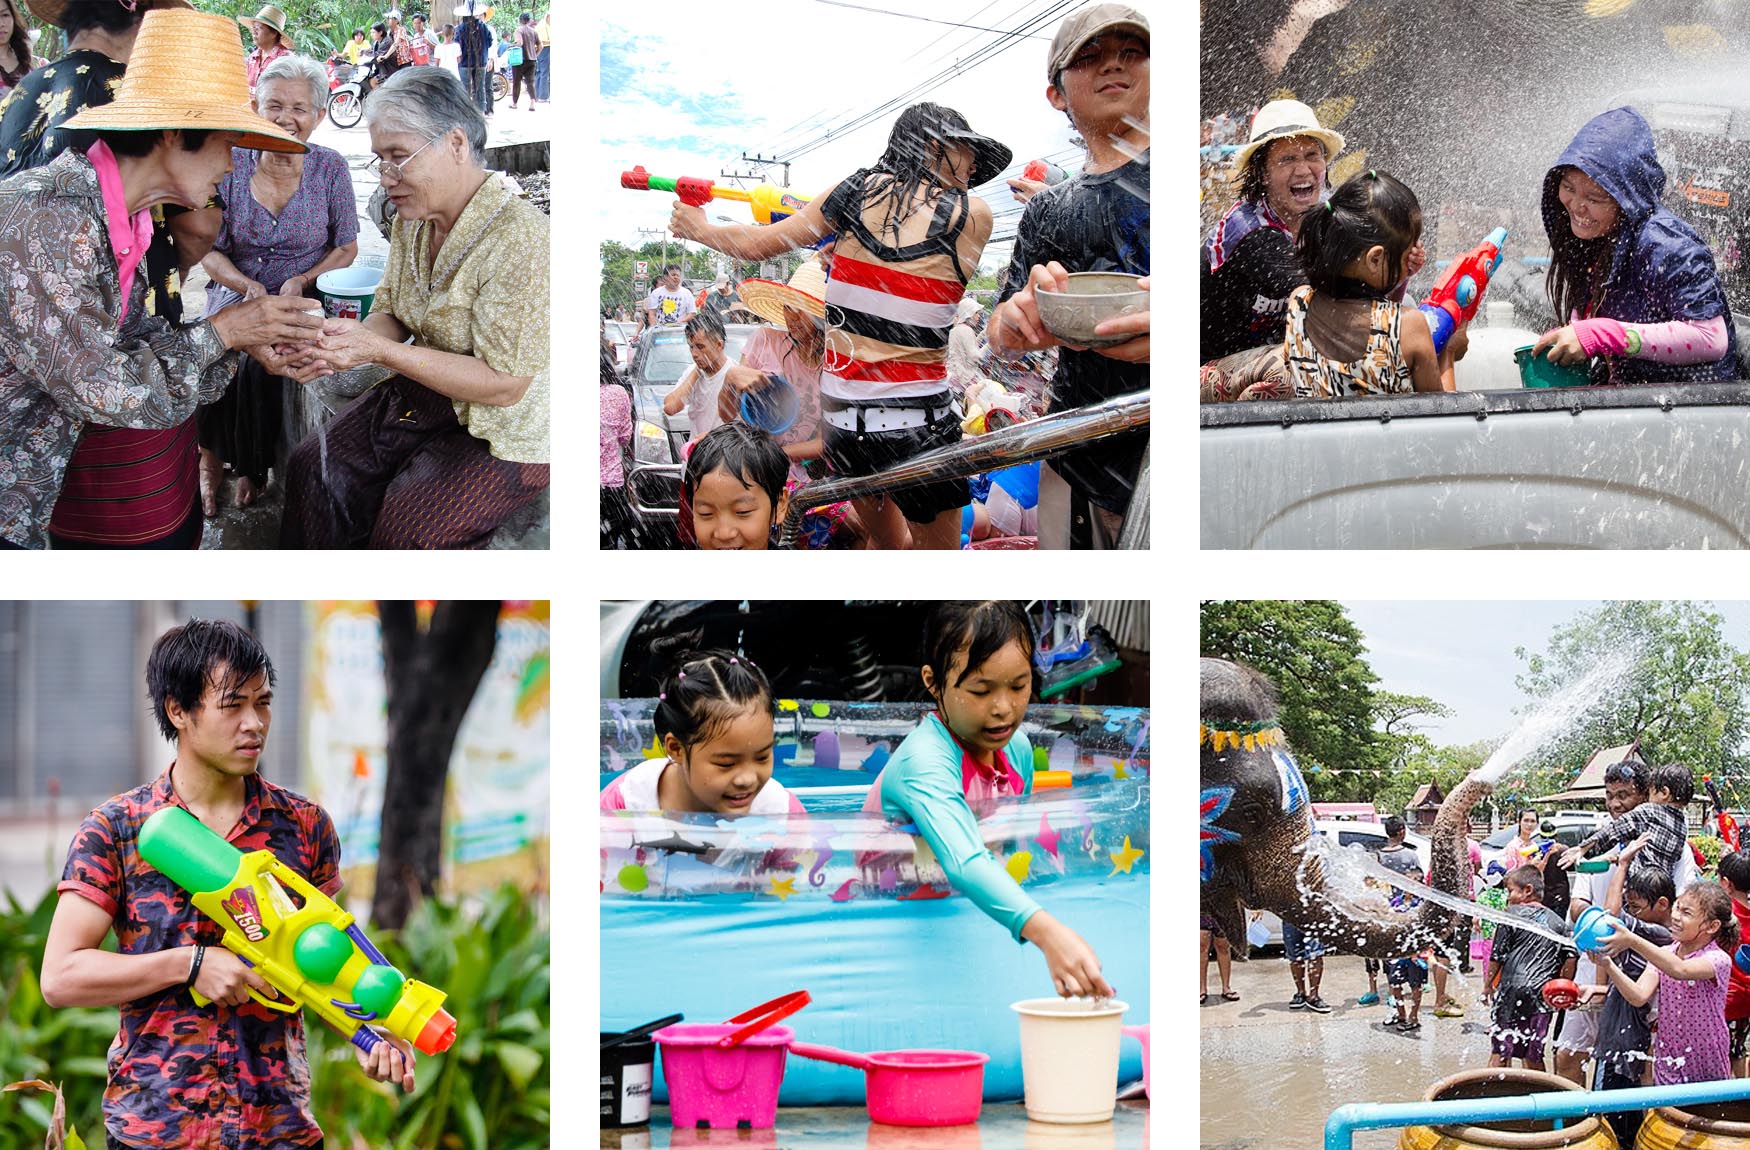 Momenti di festa durante il Songkran con abluzioni rituali e battaglie d'acqua nelle strade della Thailandia.